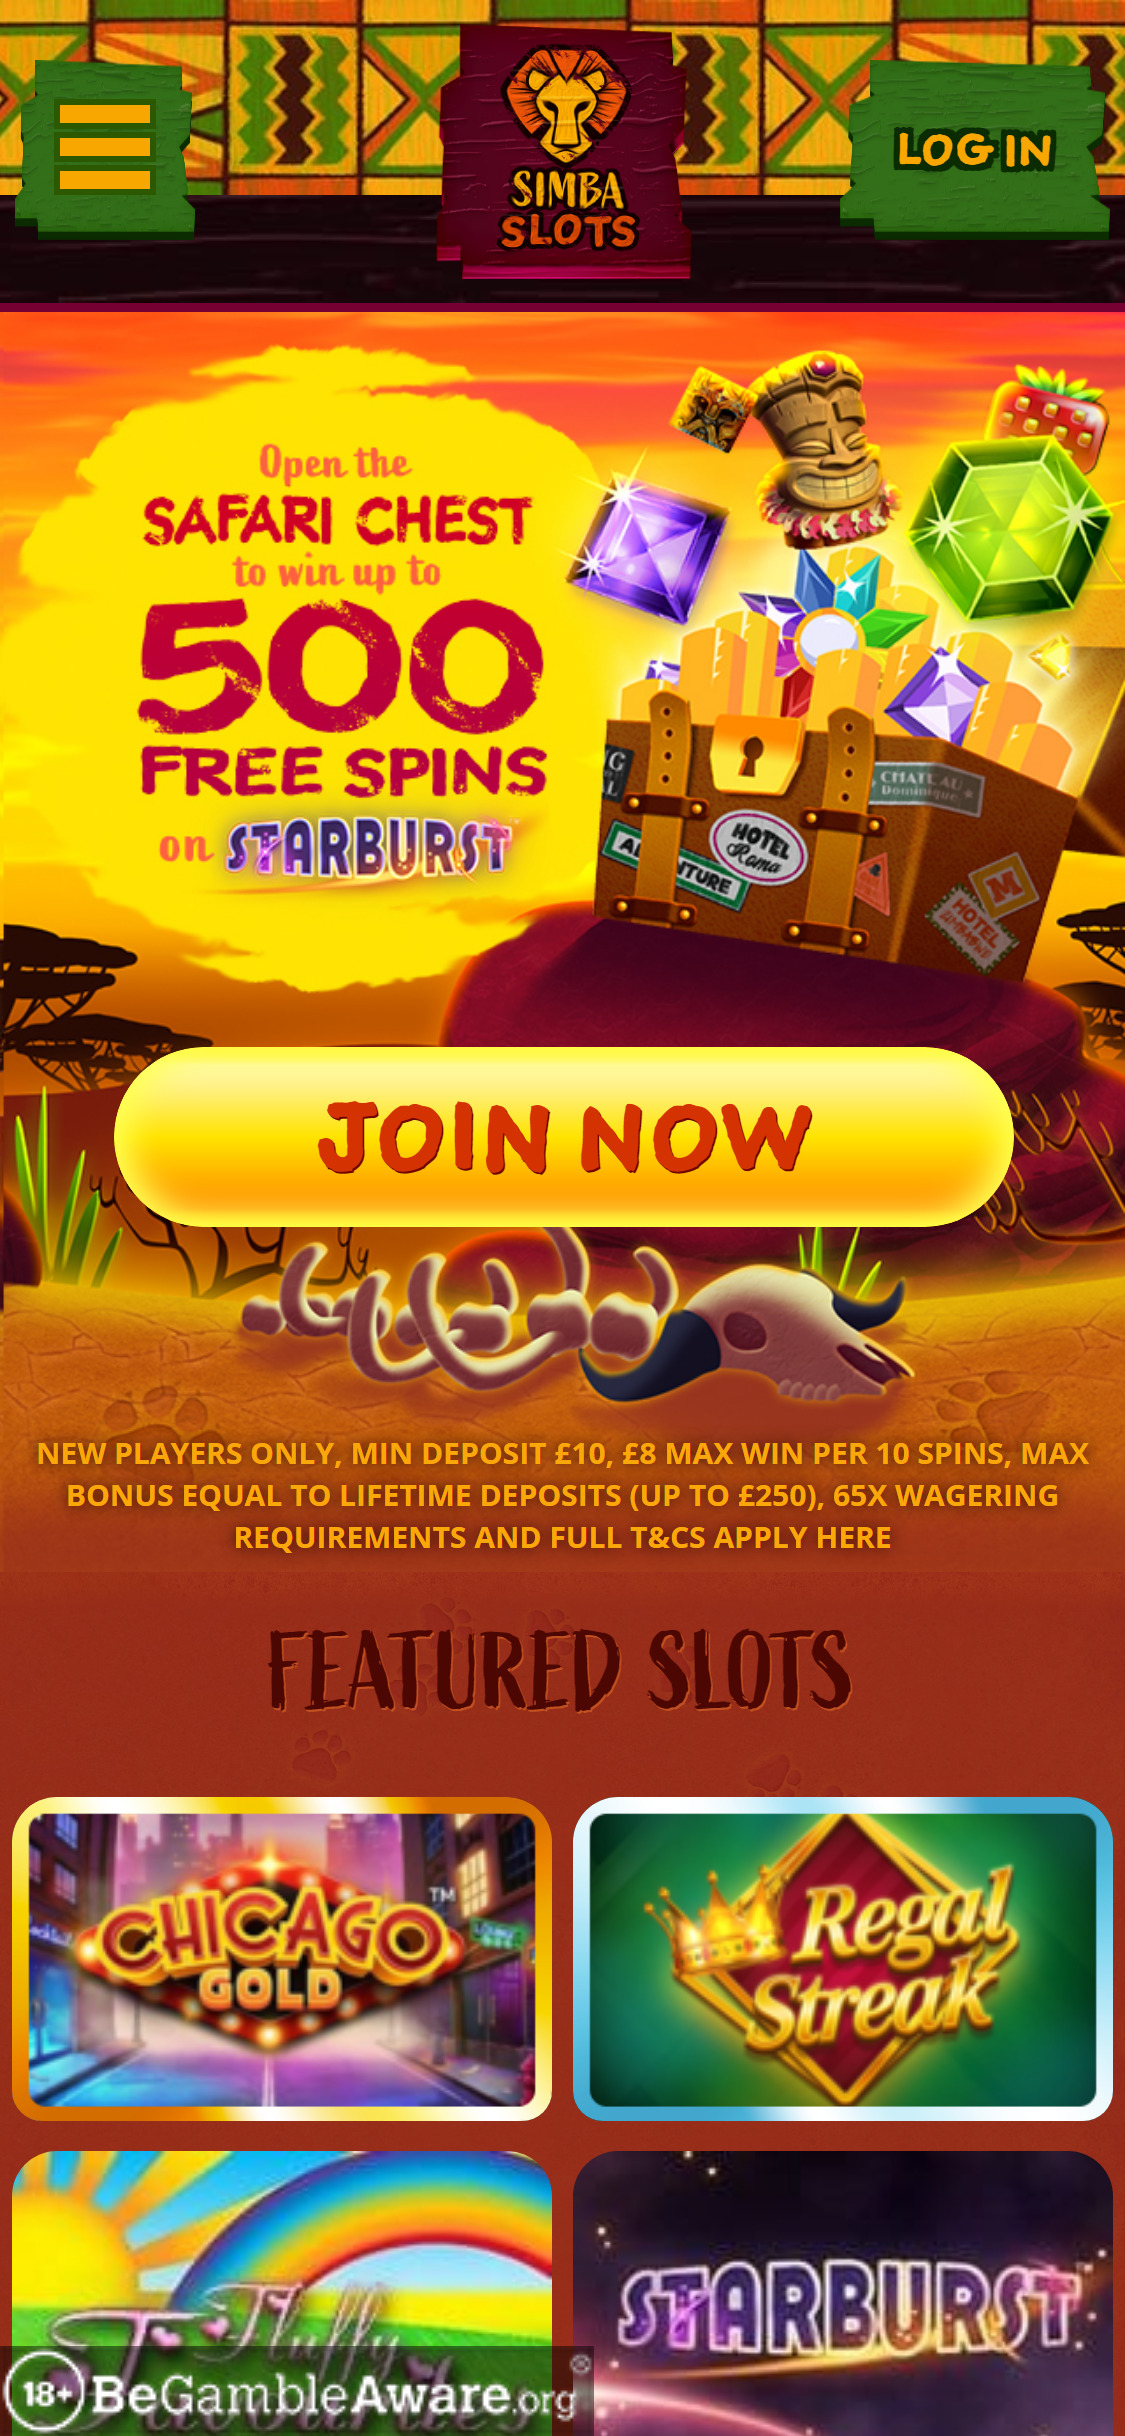 Simba Slots Casino Mobile Login Review